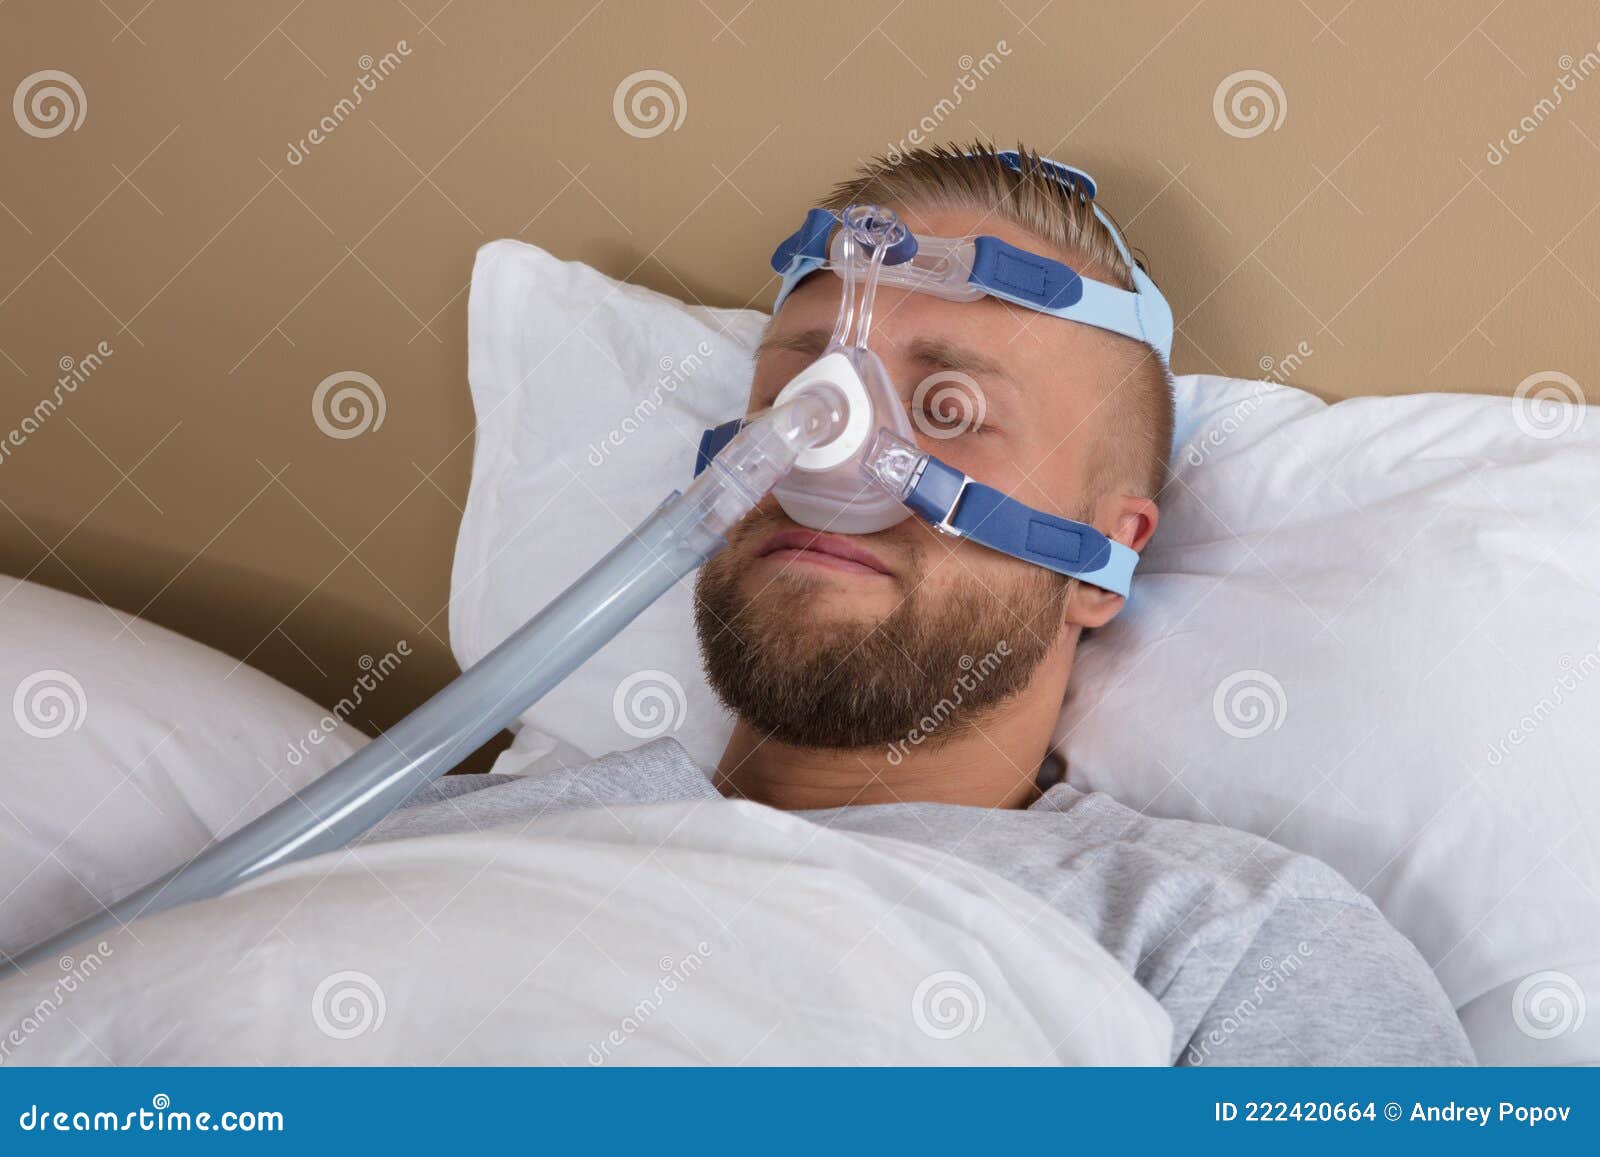 Hombre Con Apnea De Sueño Usando Una Máquina De CPAP Imagen de archivo -  Imagen de tubo, desorden: 18586449